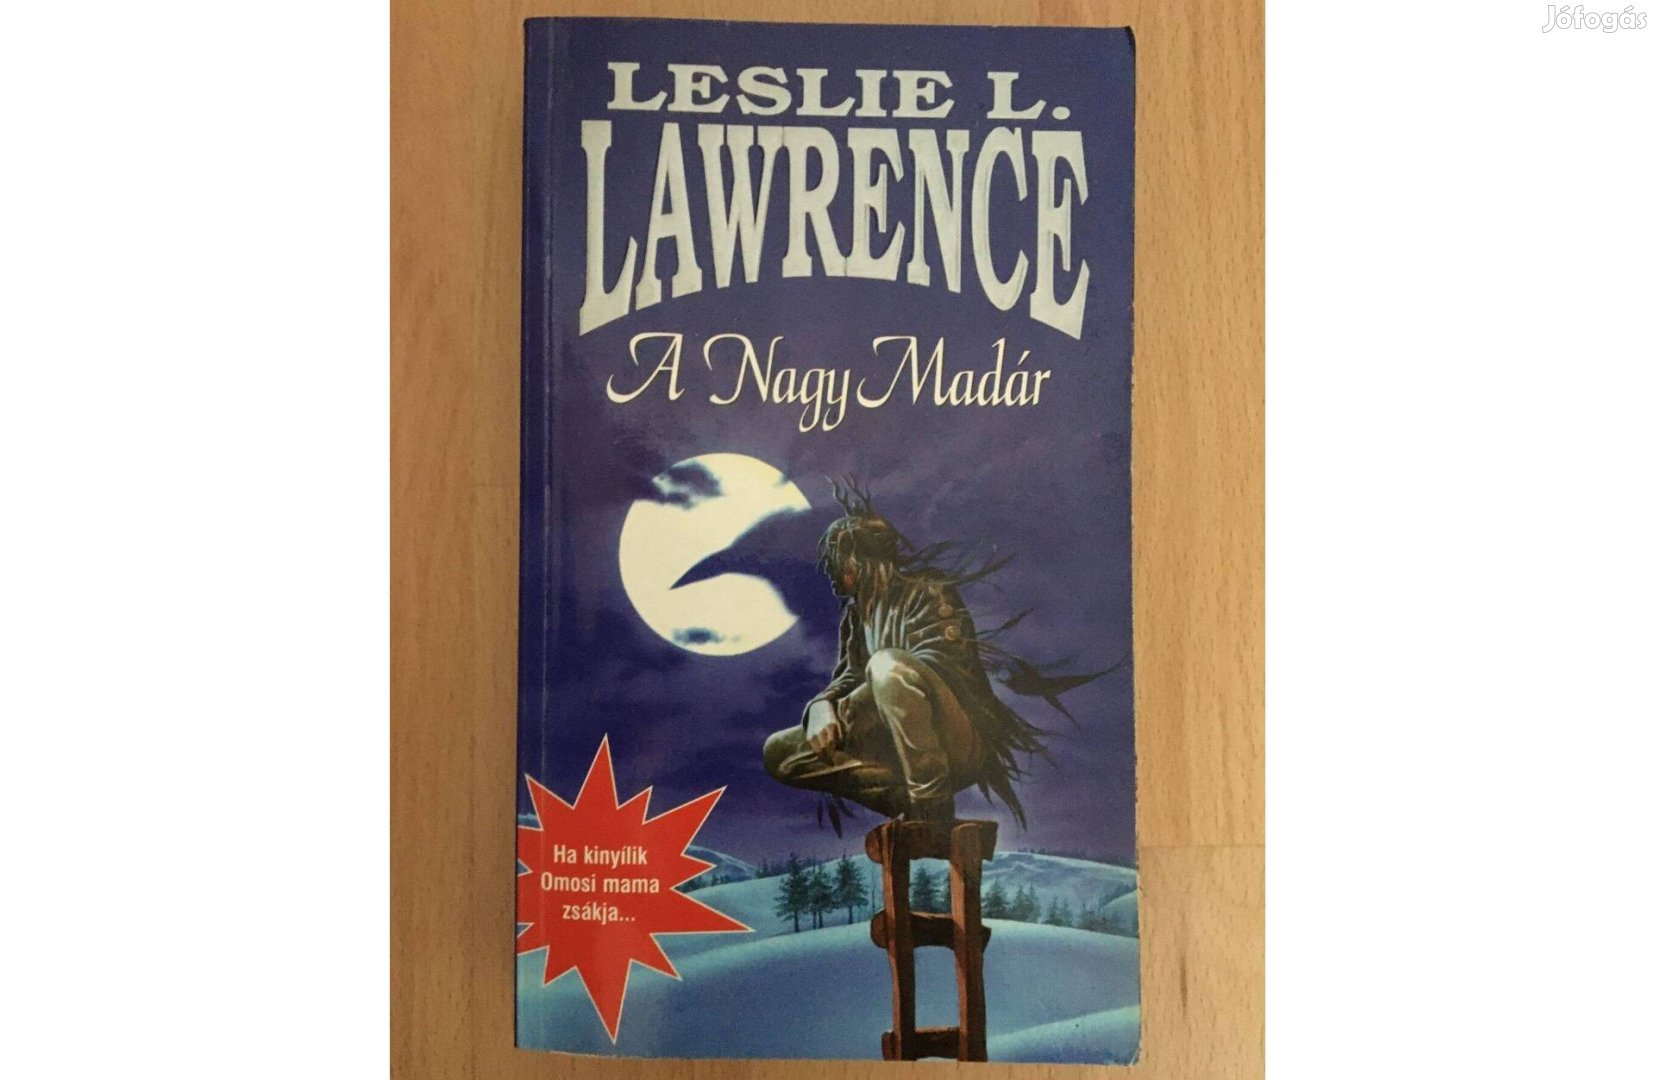 Leslie L. Lawrence: A Nagy madár c. könyv